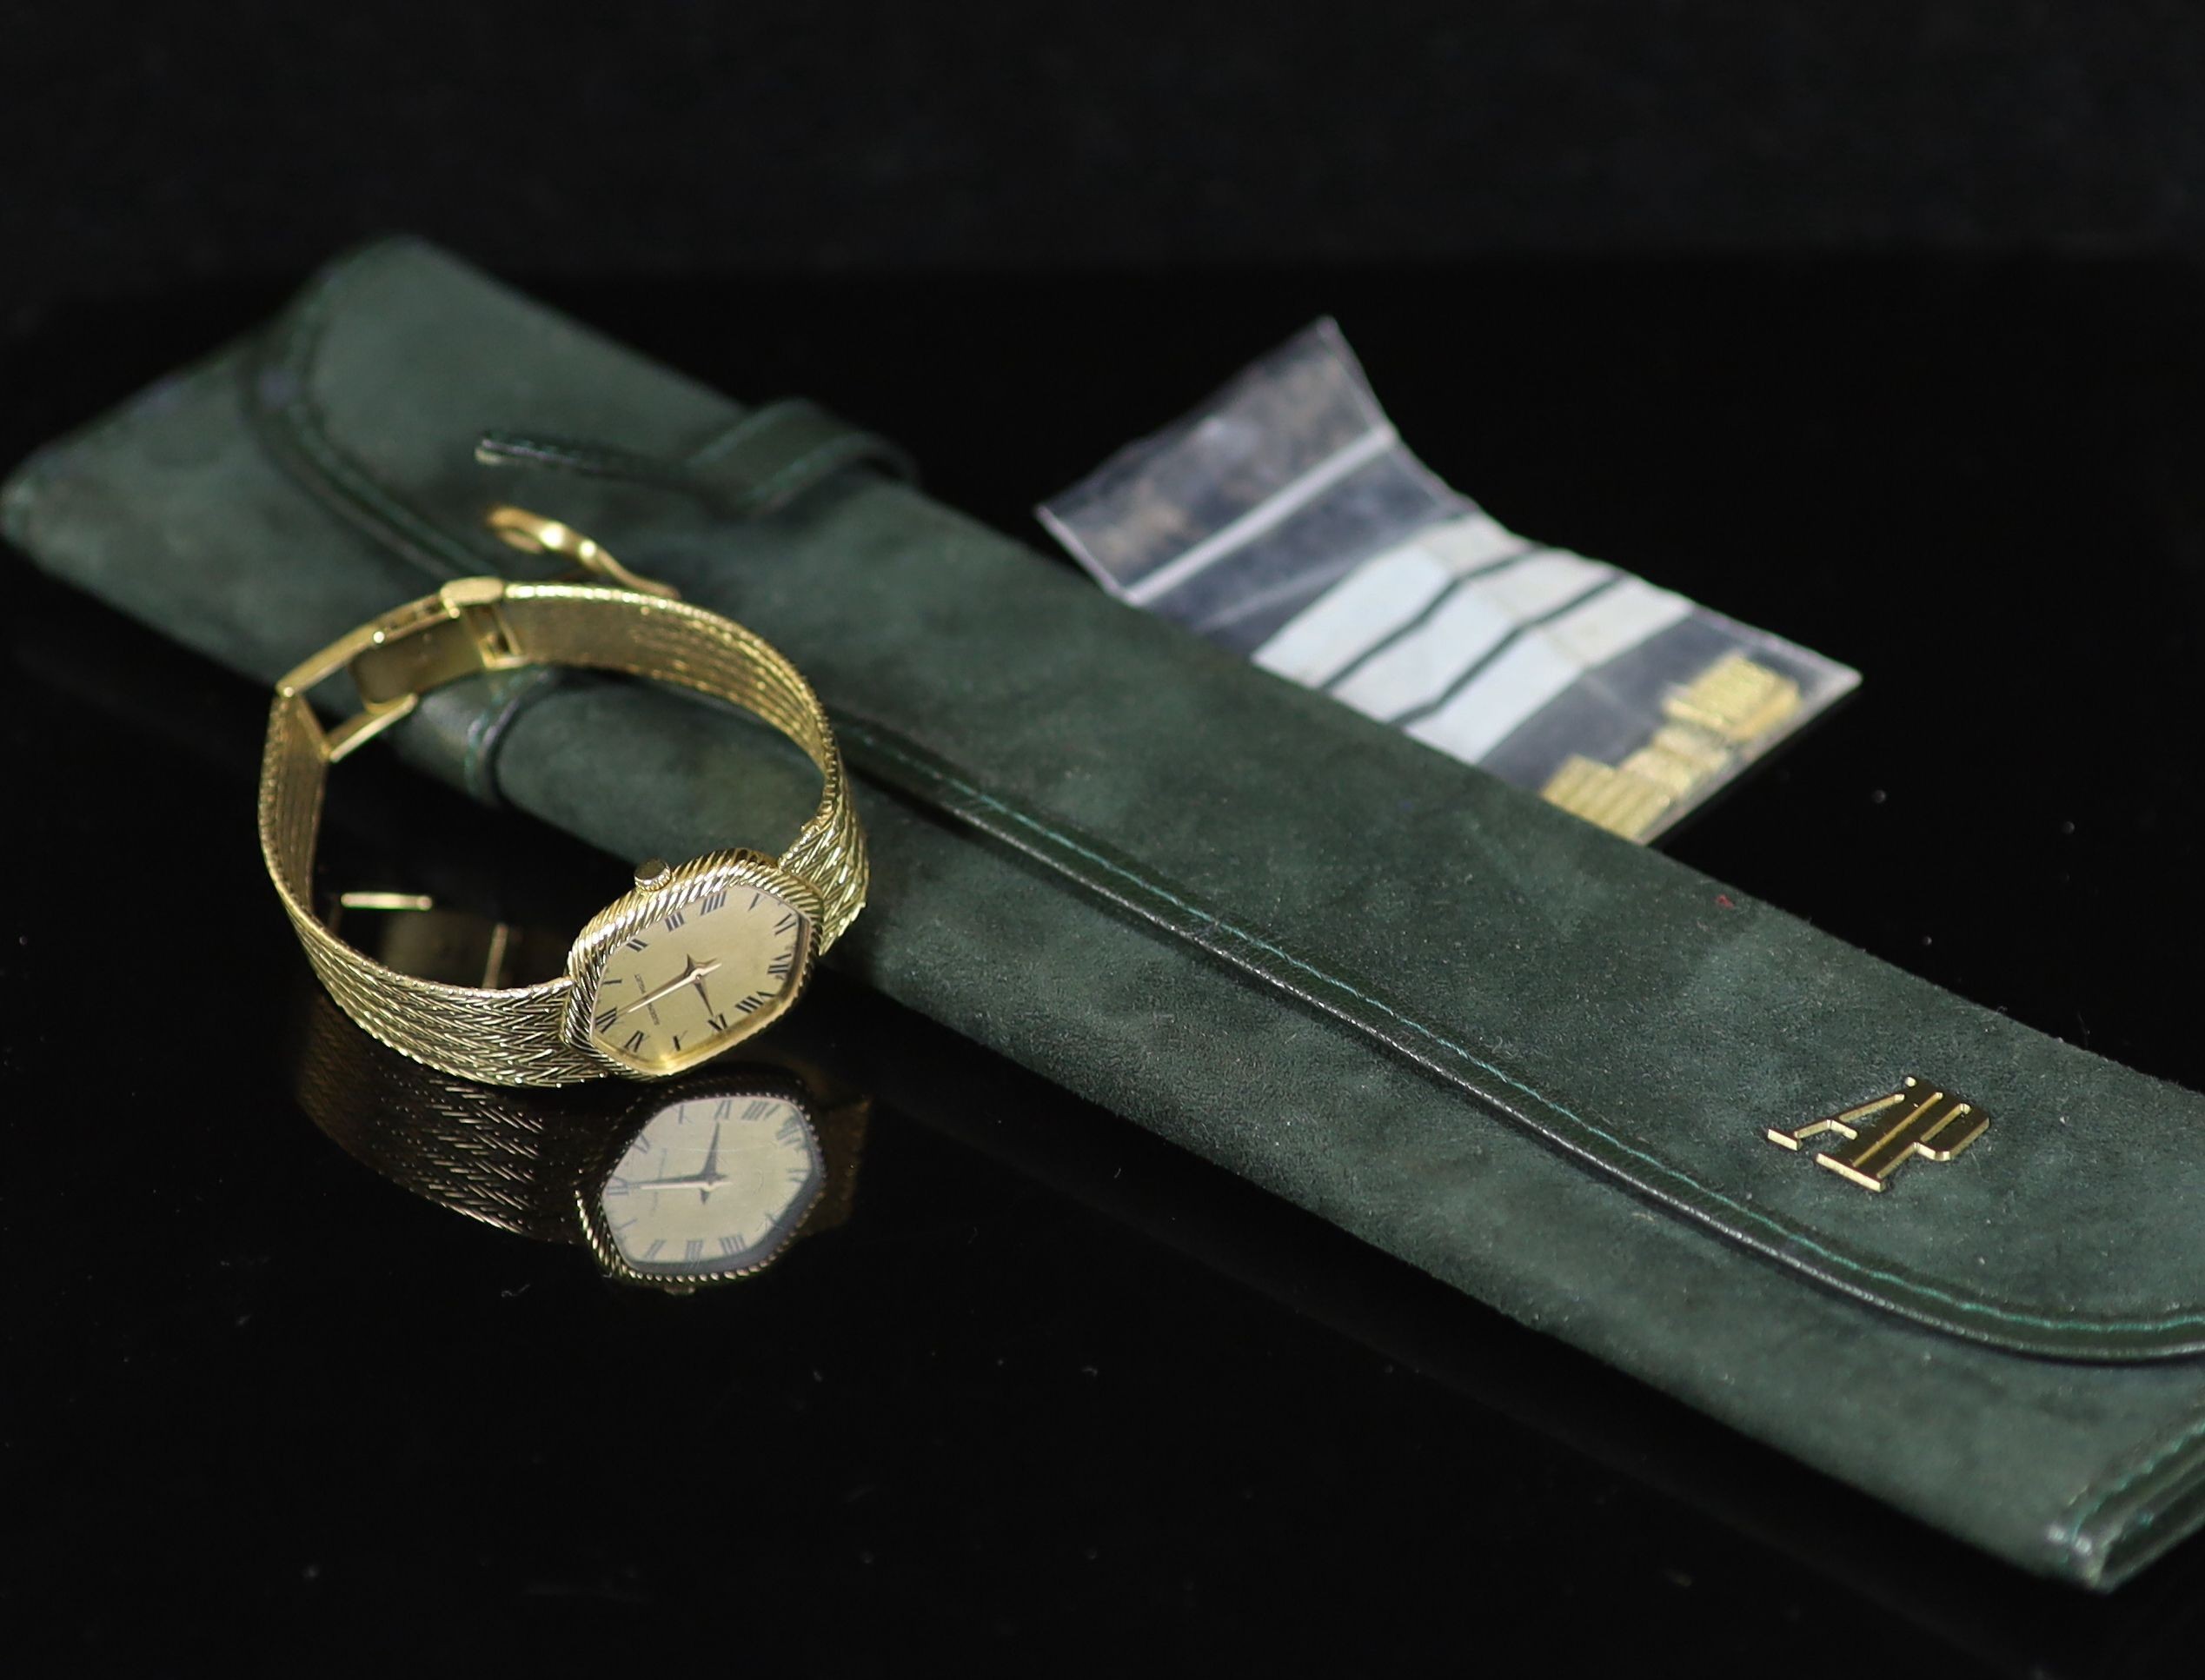 A lady's 18ct gold Audemars Piguet manual wind wrist watch